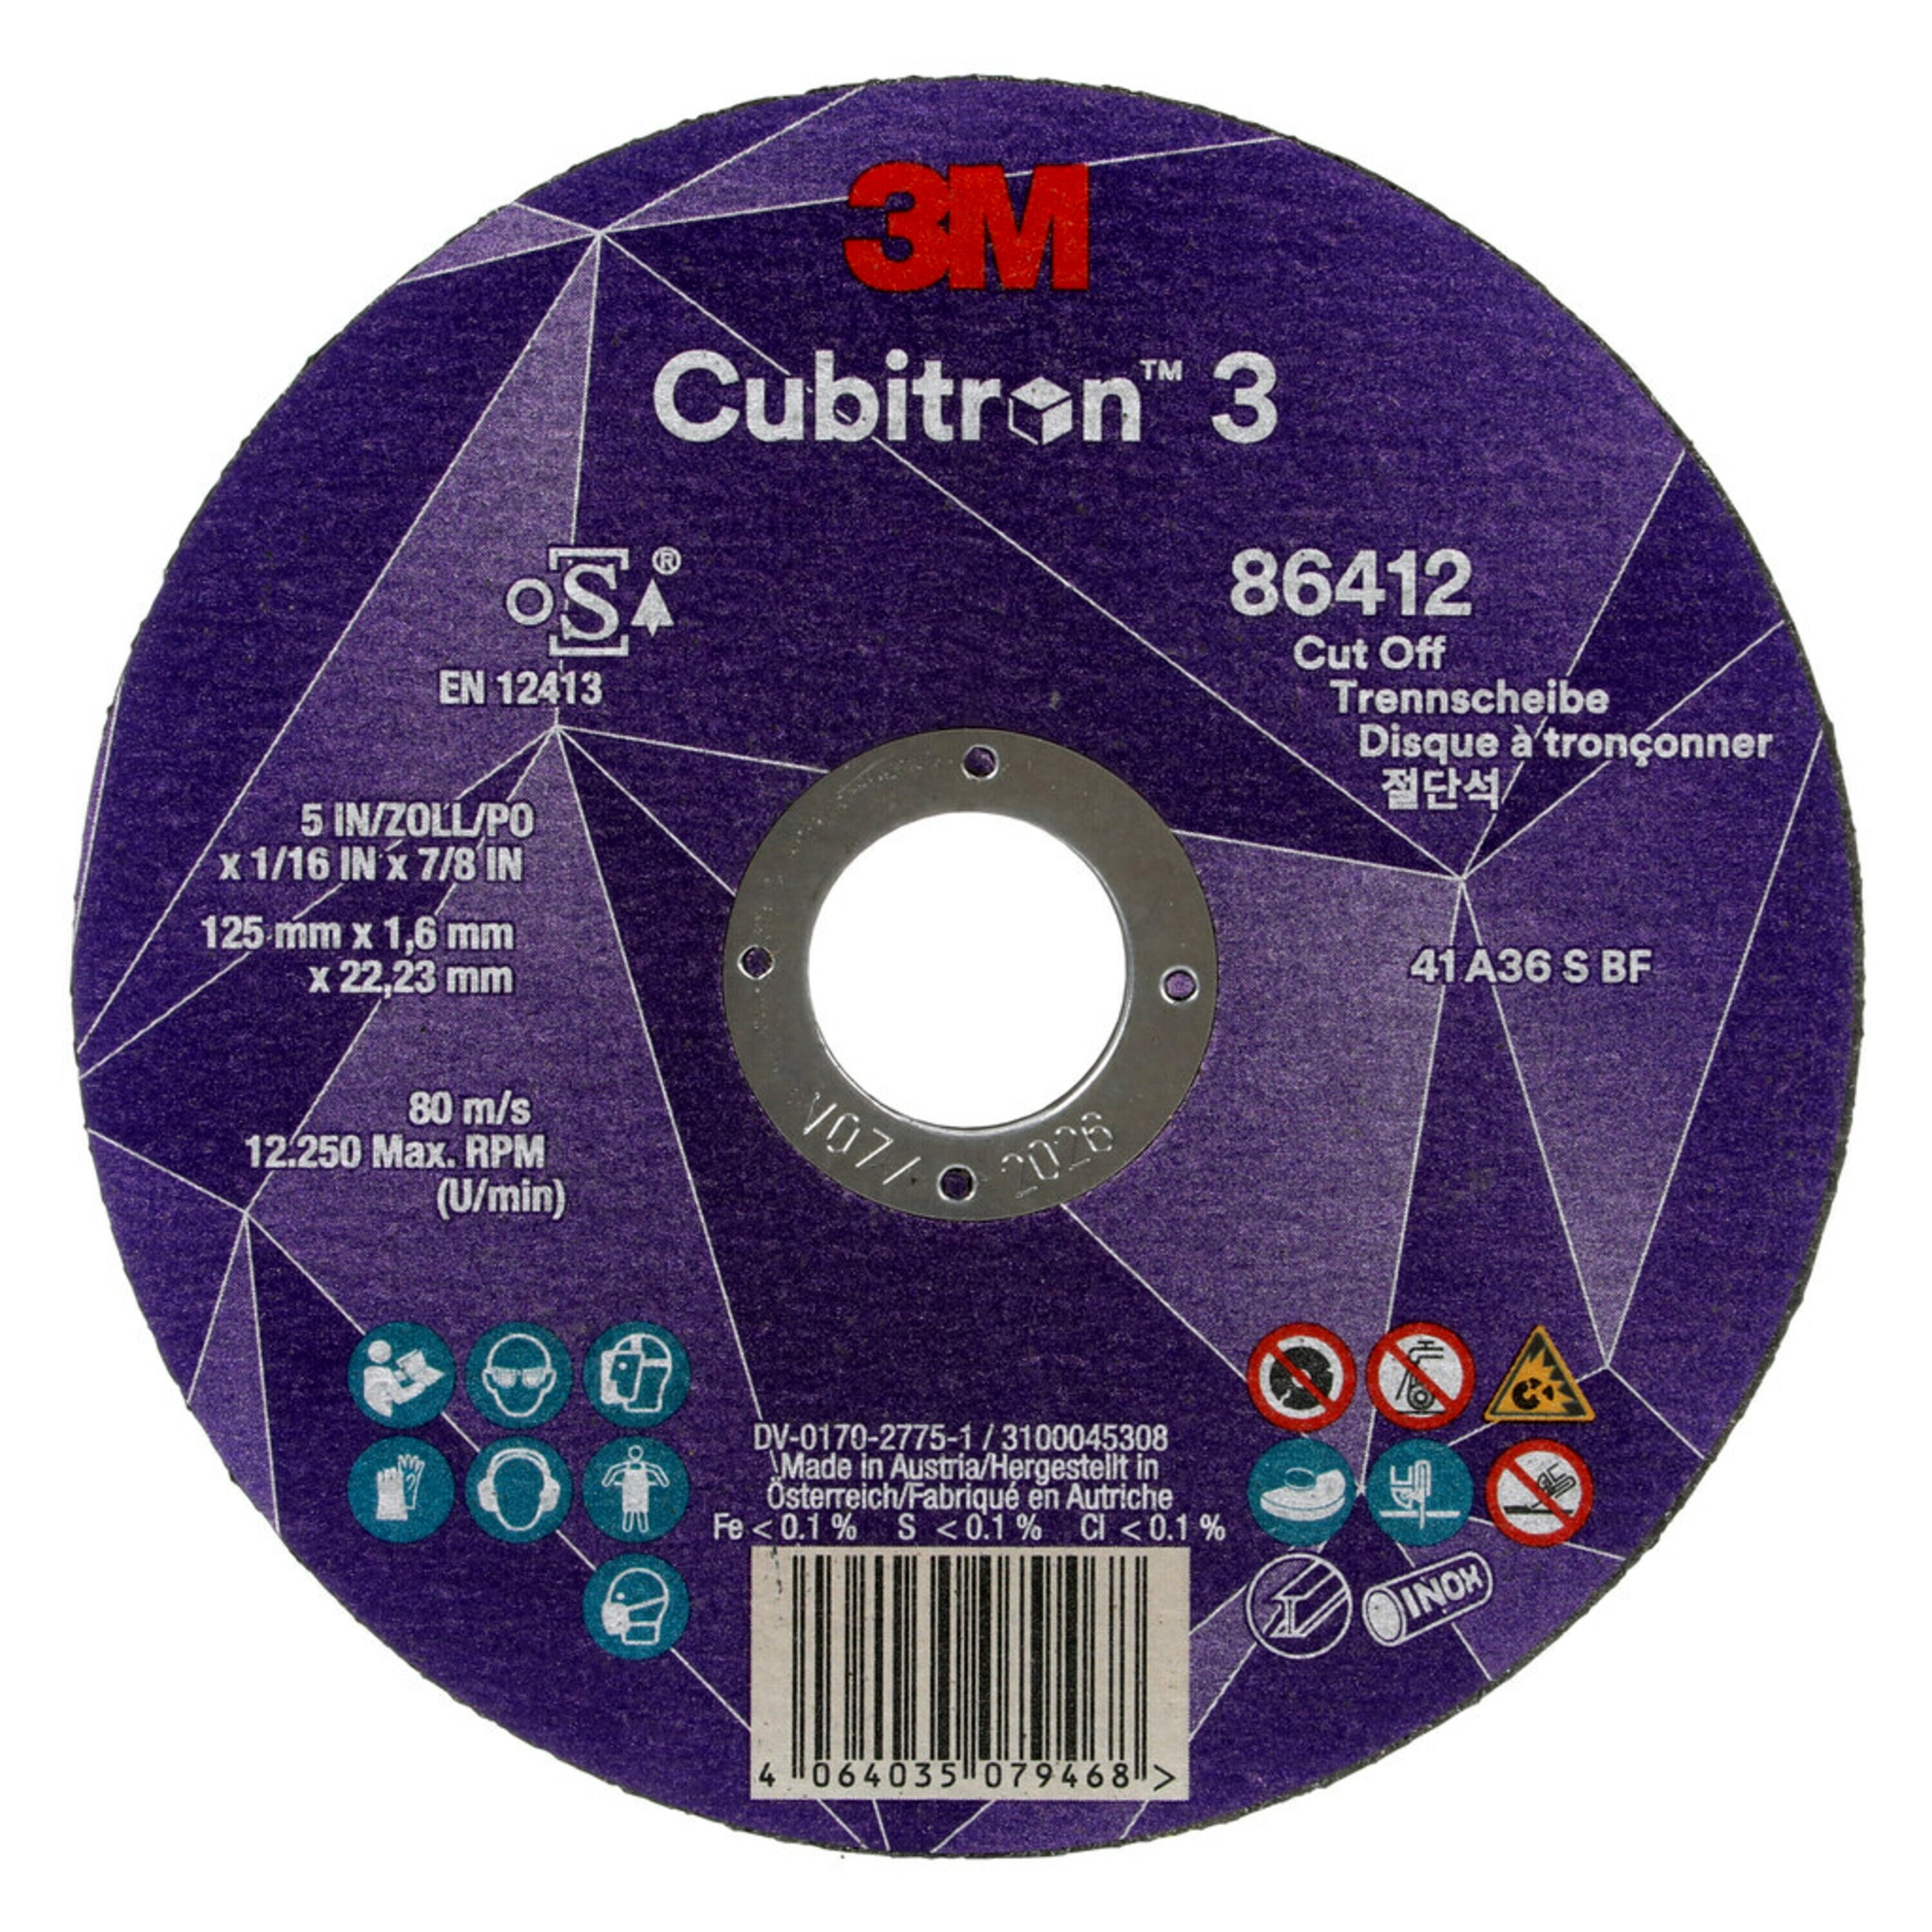 3M Cubitron 3 disco da taglio, 125 mm, 1,6 mm 22,23 mm, 36 , tipo 41 #86412